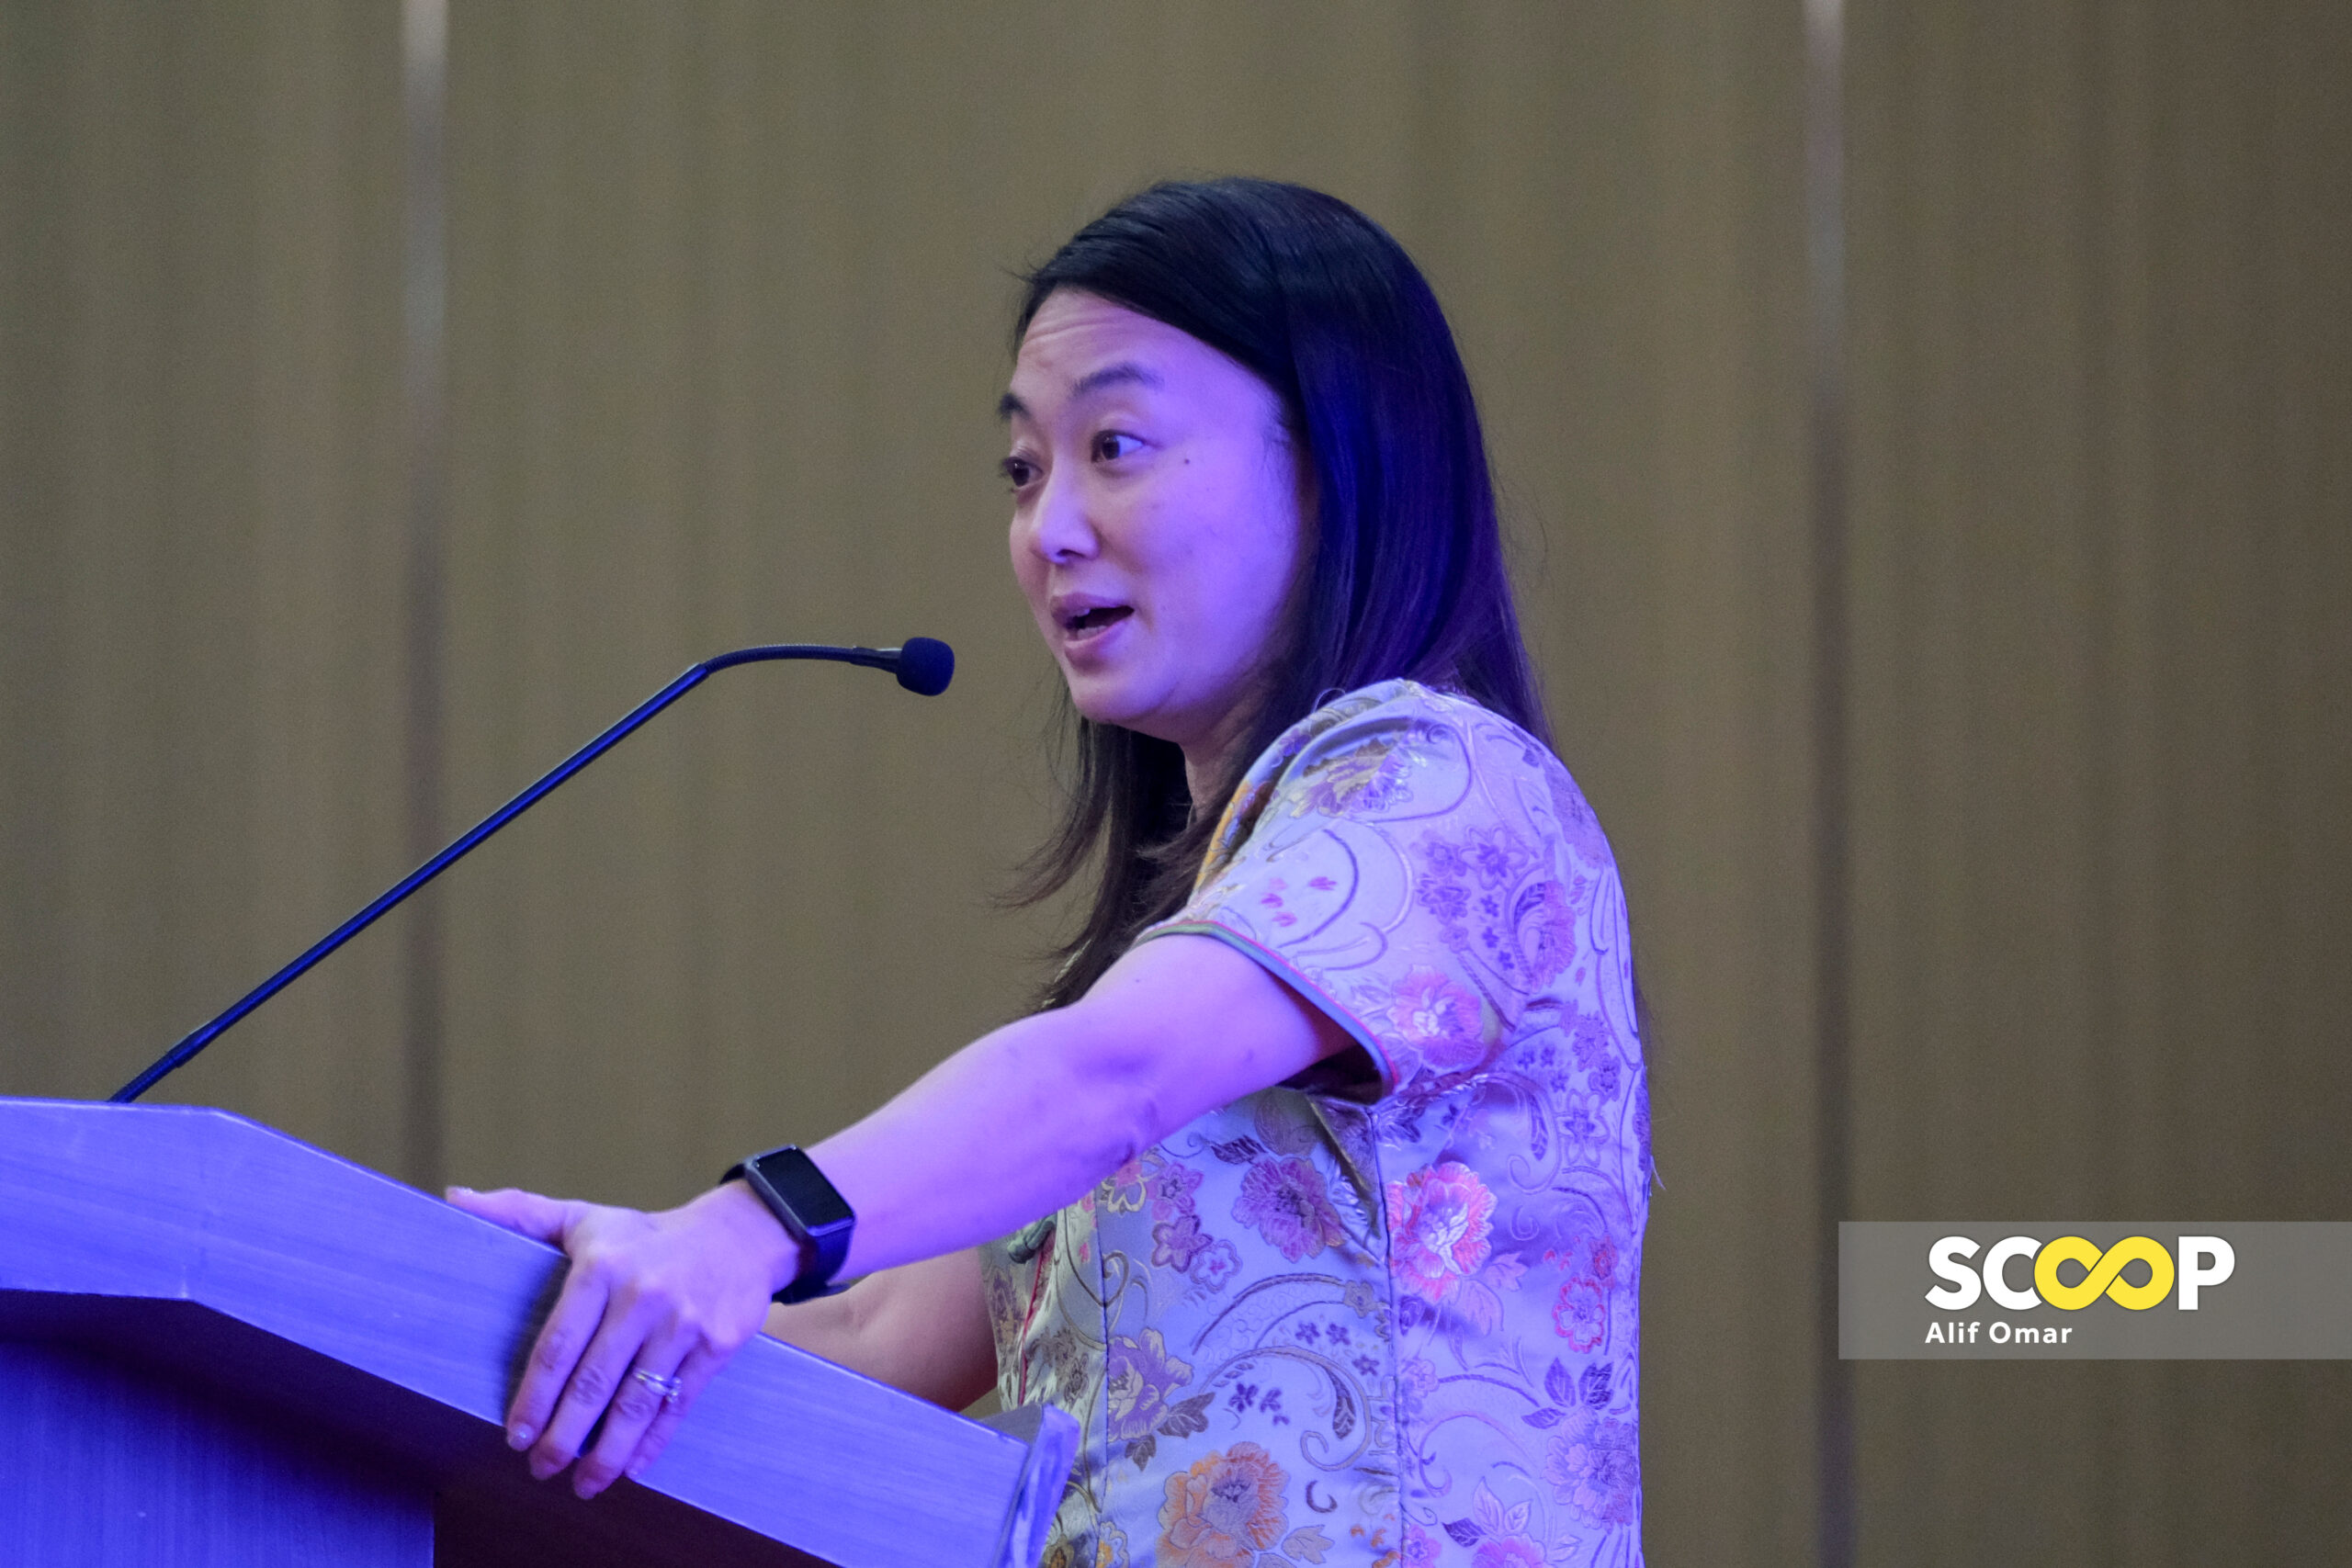 Hannah Yeoh should eschew unnecessary statements to avoid online flak, says analyst